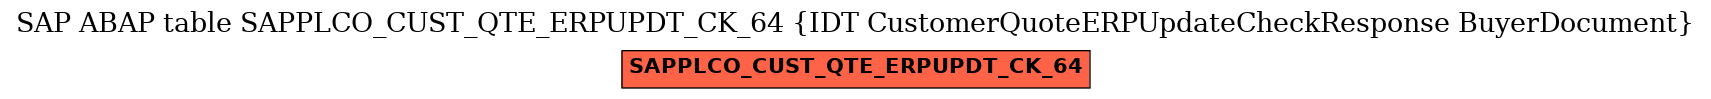 E-R Diagram for table SAPPLCO_CUST_QTE_ERPUPDT_CK_64 (IDT CustomerQuoteERPUpdateCheckResponse BuyerDocument)